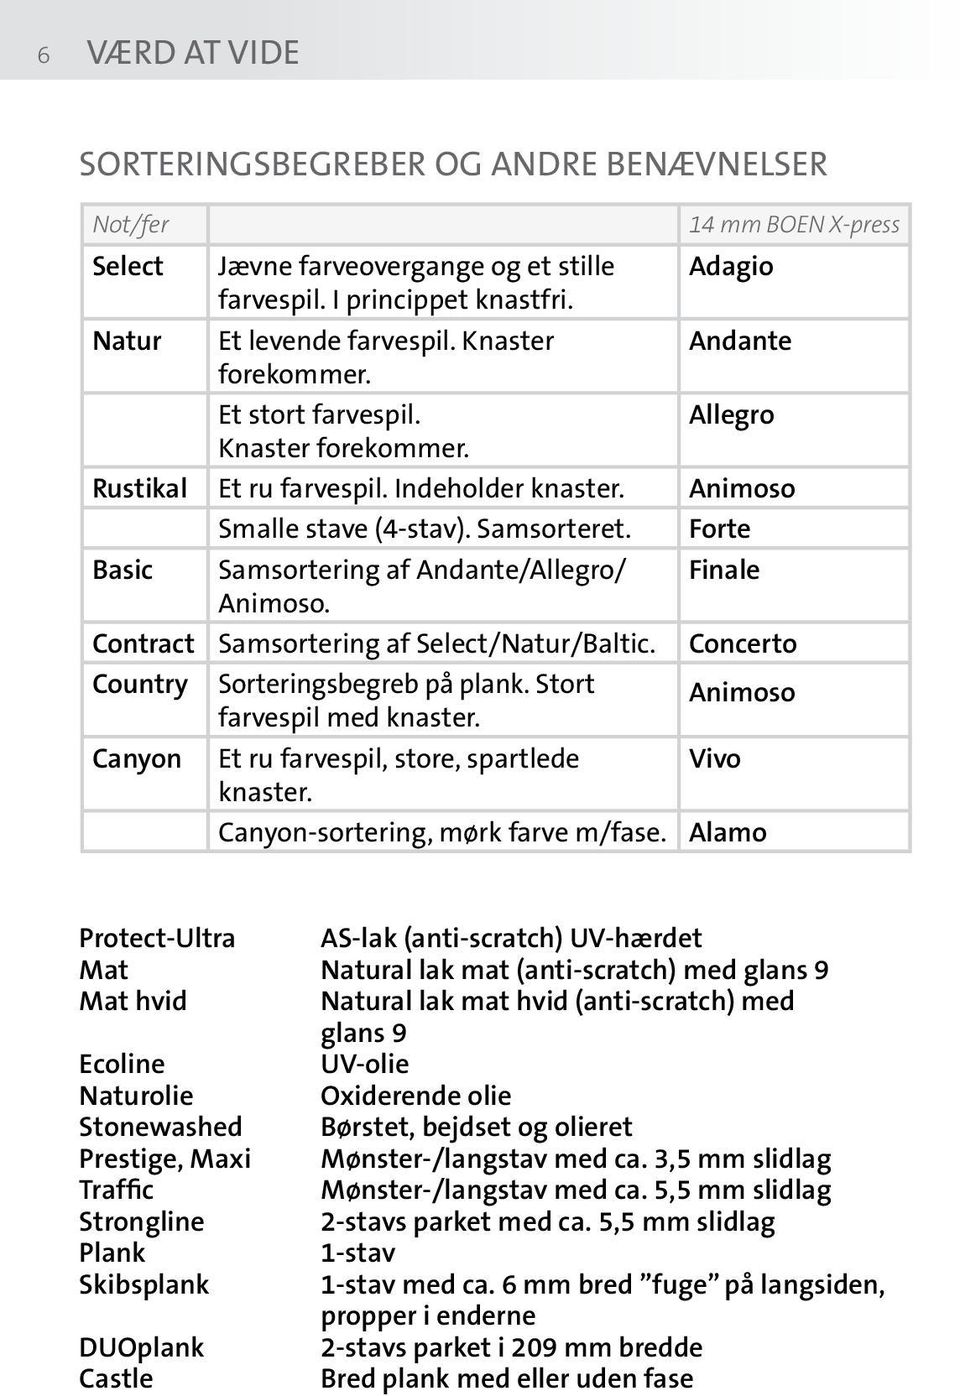 Forte Basic Samsortering af Andante/Allegro/ Finale Animoso. Contract Samsortering af Select/Natur/Baltic. Concerto Country Sorteringsbegreb på plank. Stort farvespil med knaster.